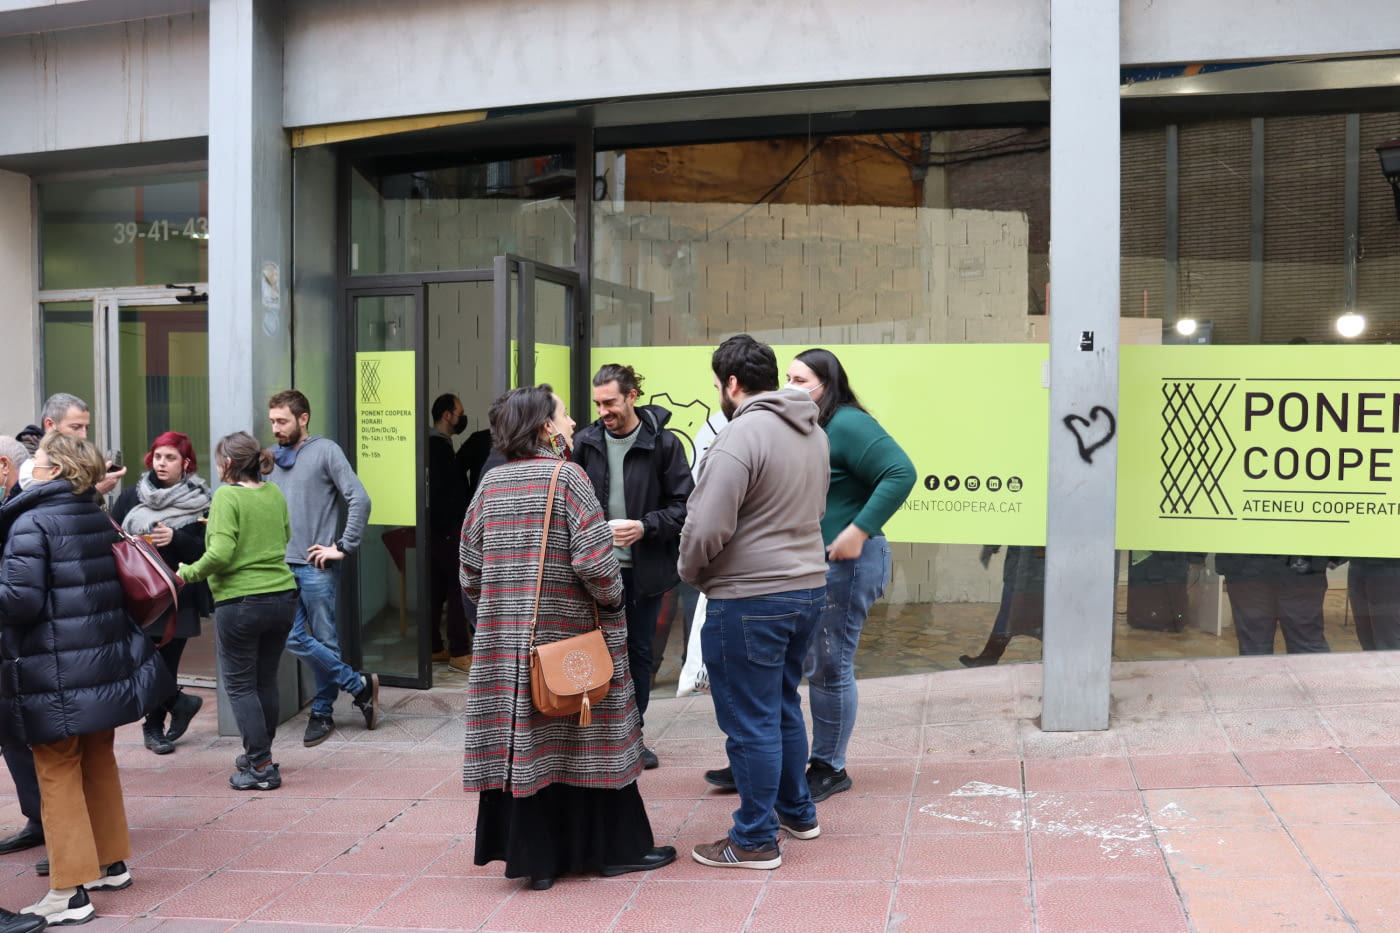 Nou impuls a Ponent Coopera amb l’obertura d’un local a la ciutat de Lleida